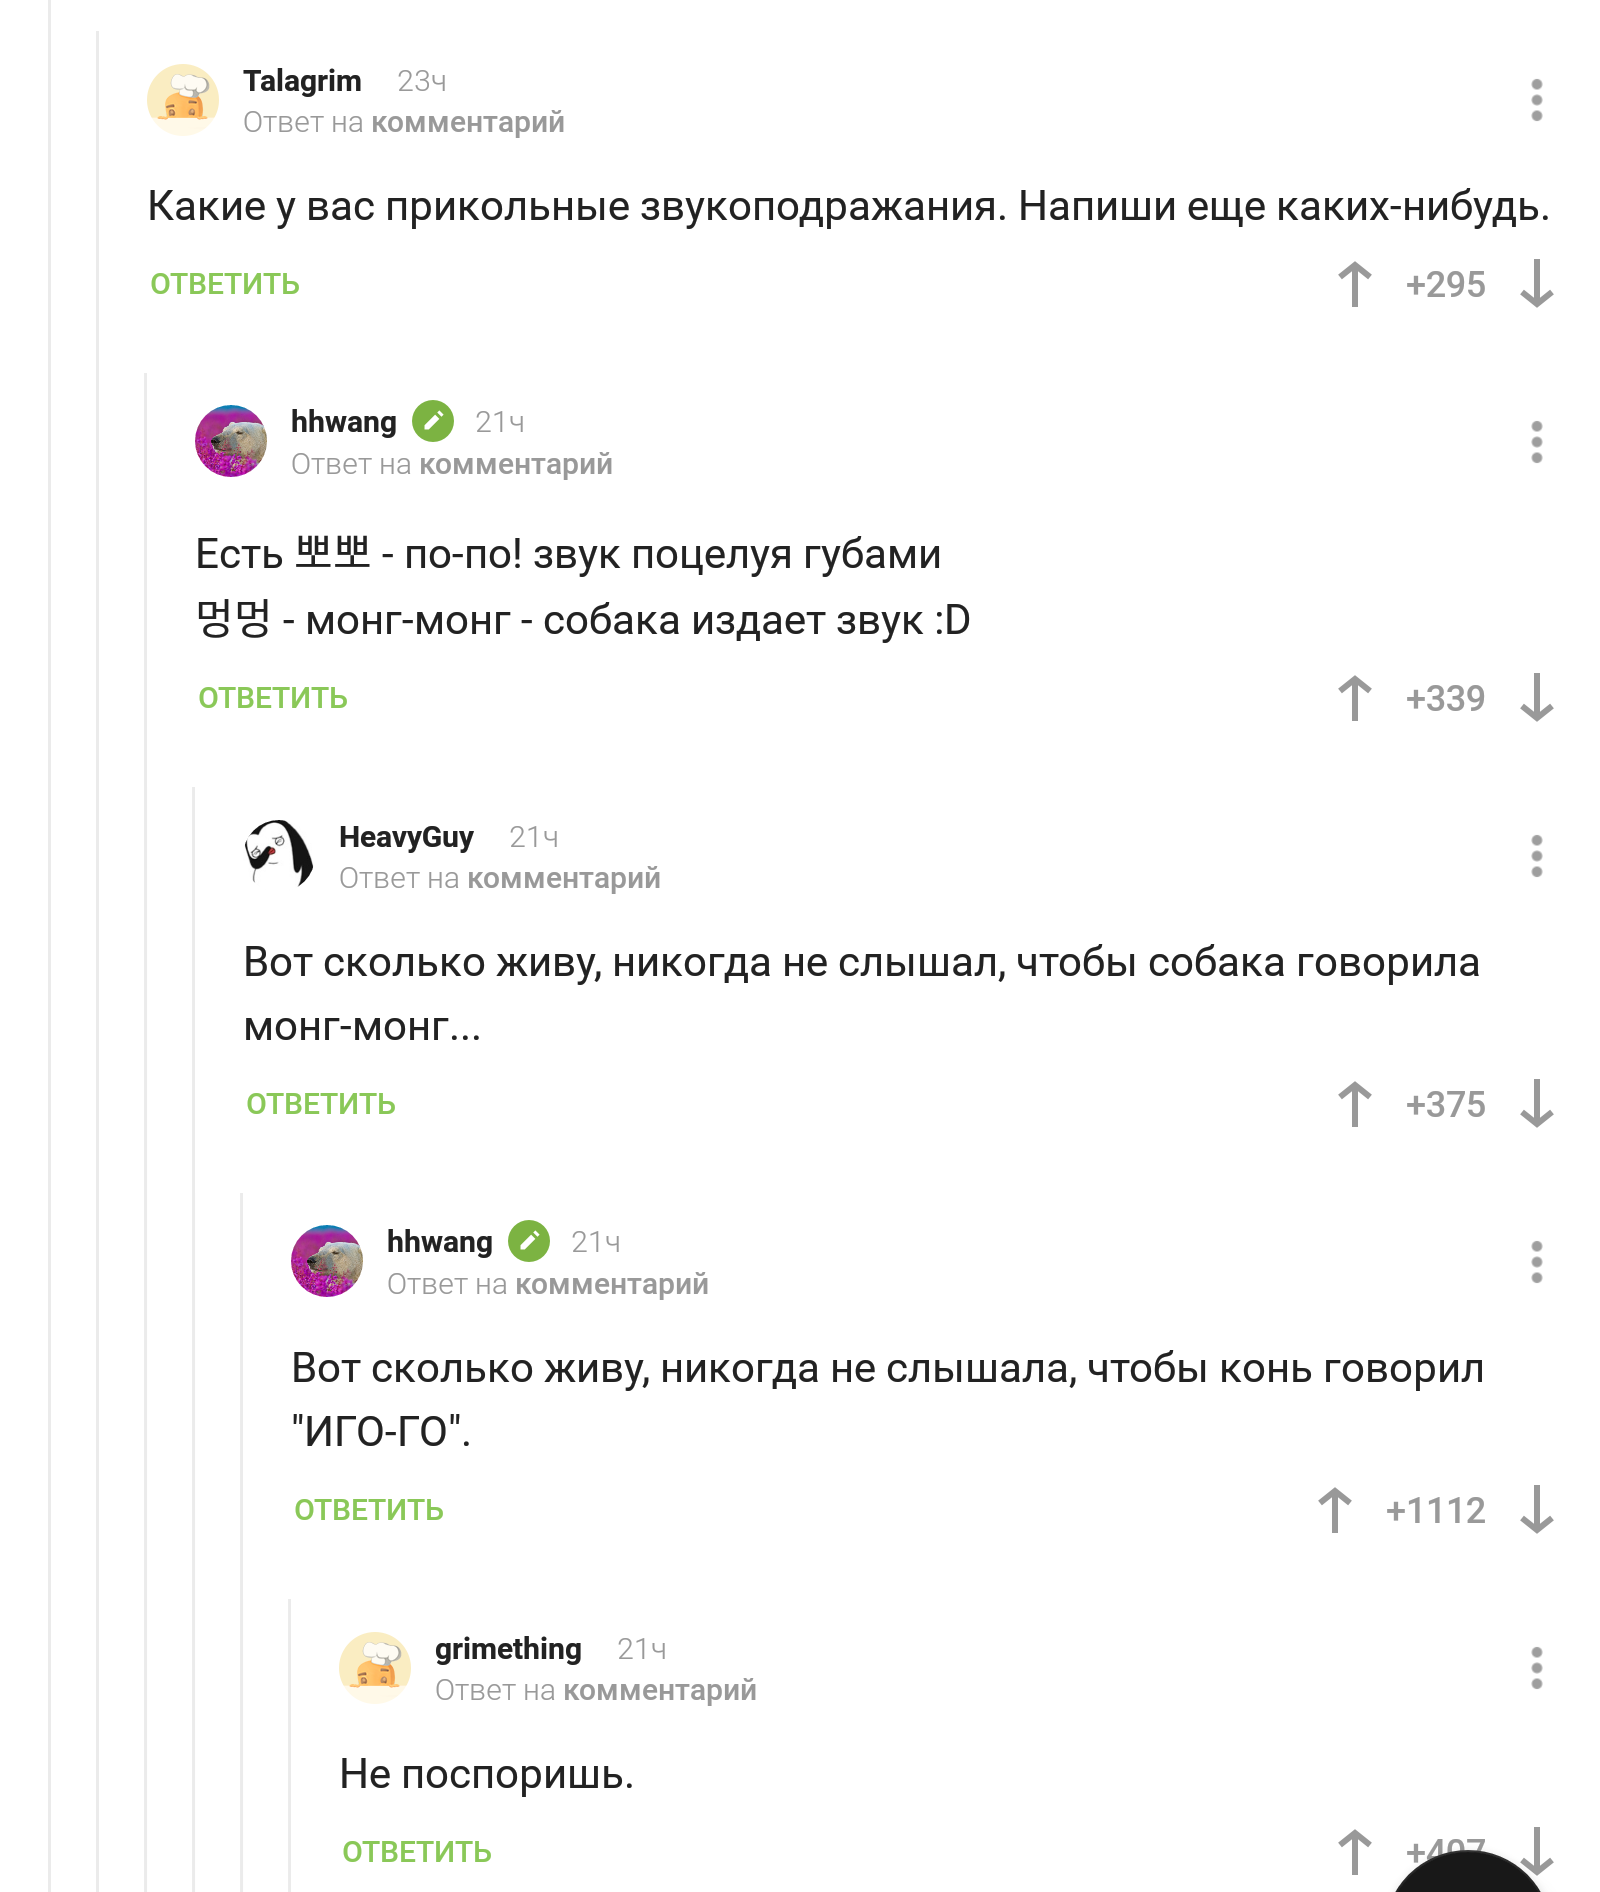 Onomatopoeia - Onomatopoeia, Screenshot, Comments on Peekaboo